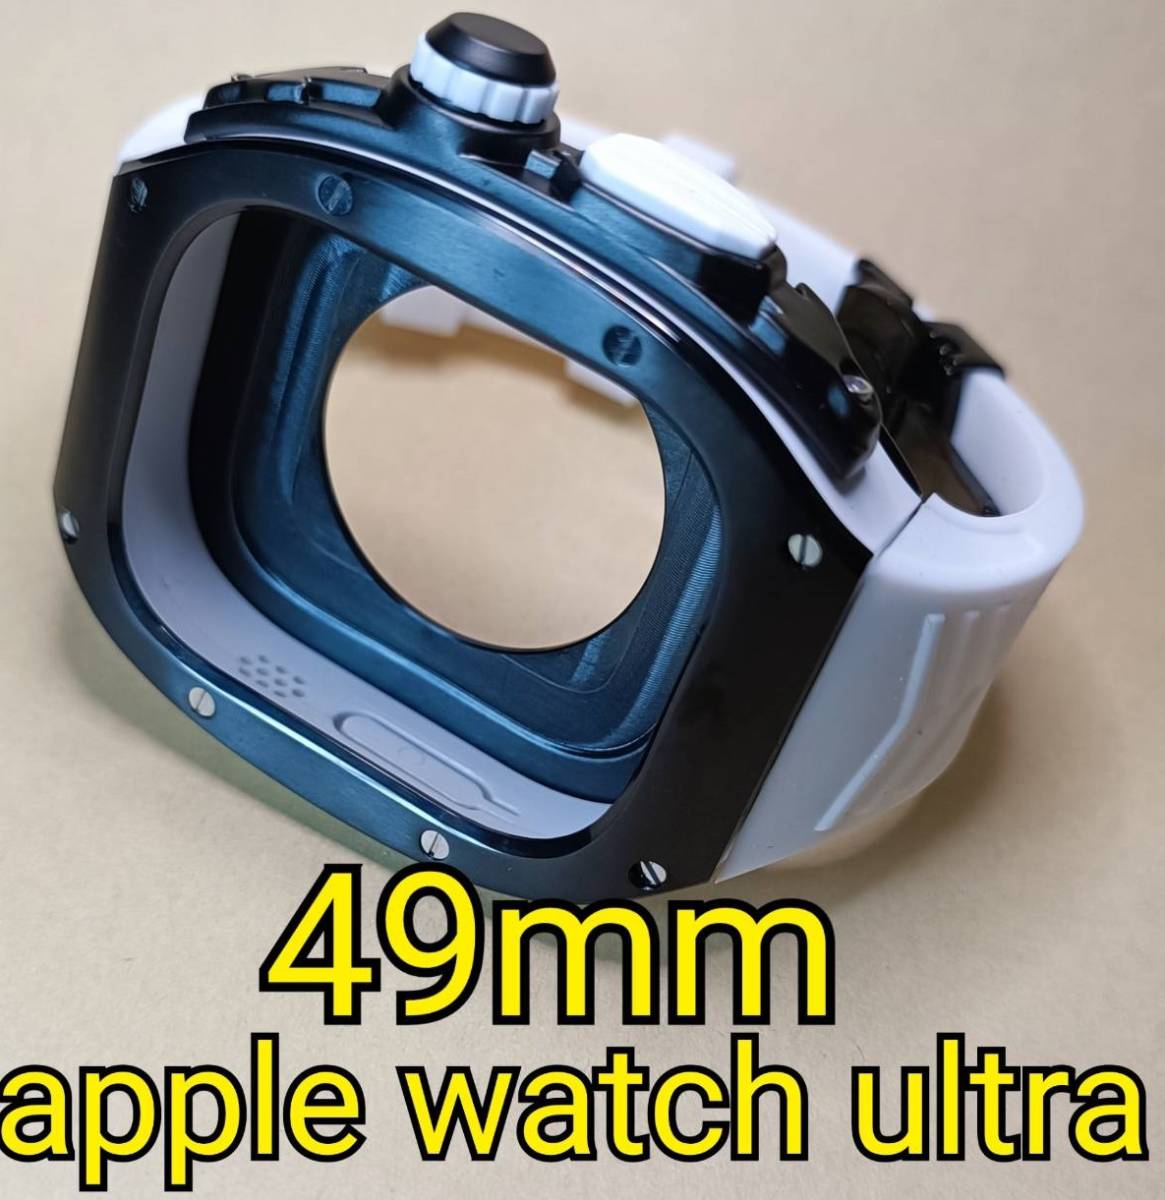 黒白 ラバー 49mm apple watch ultra アップルウォッチウルトラ メタル ケース ステンレス カスタム golden concept ゴールデンコンセプト _画像1